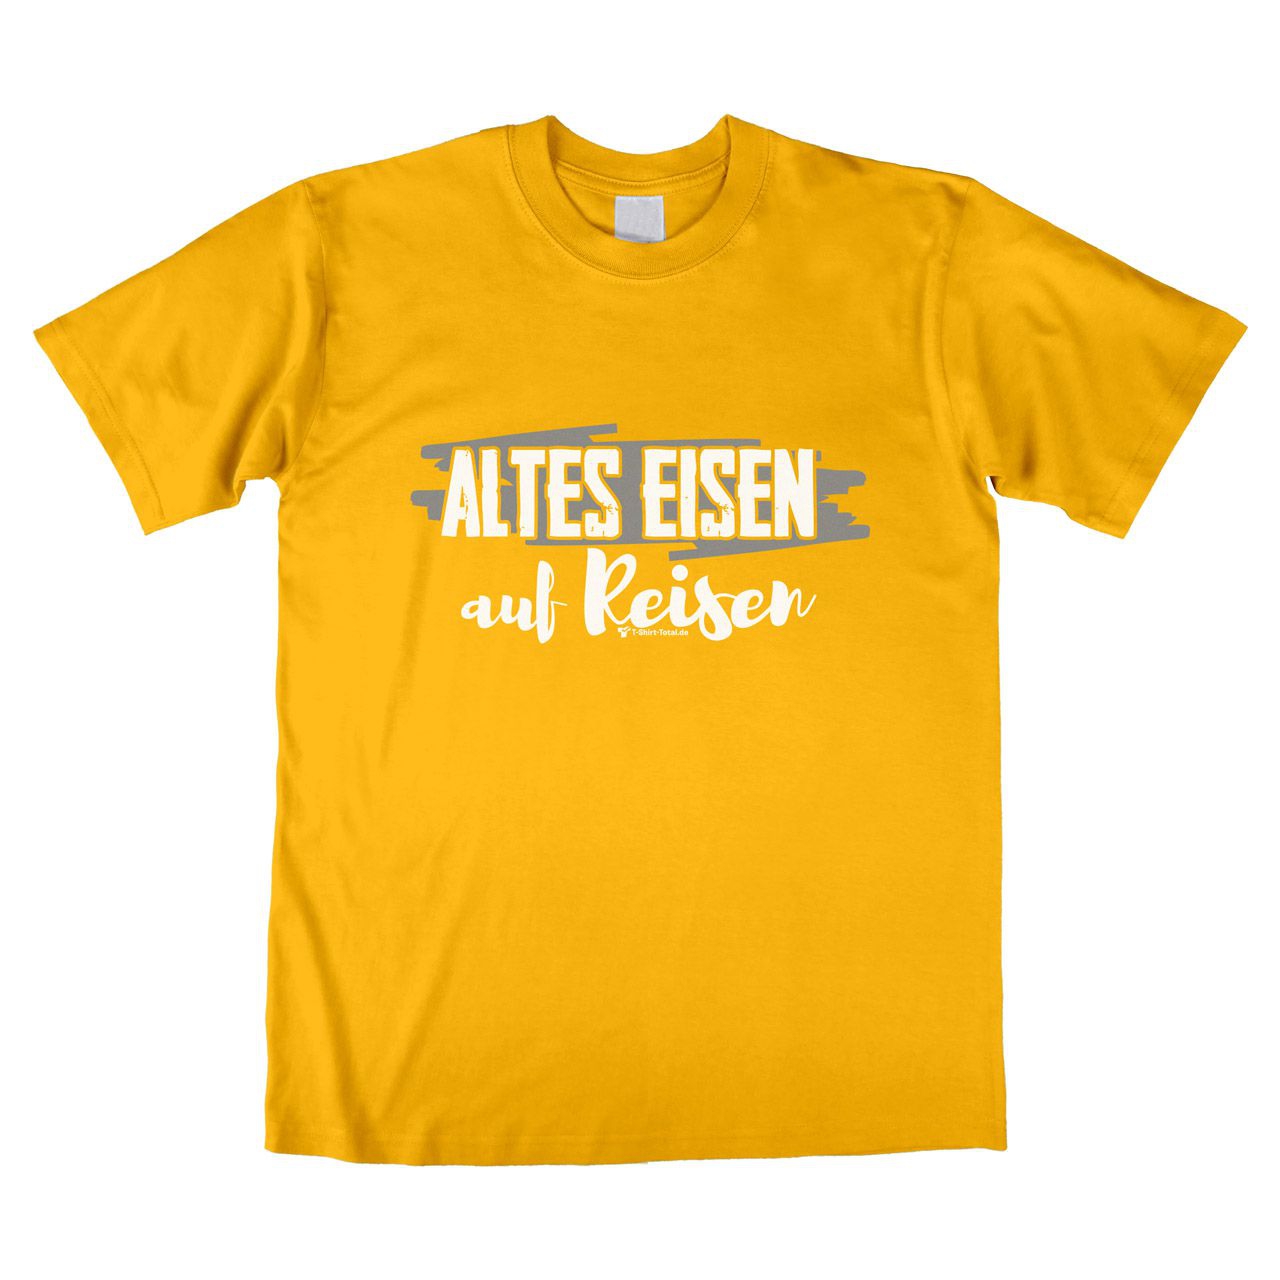 Altes Eisen auf Reisen Unisex T-Shirt gelb Medium